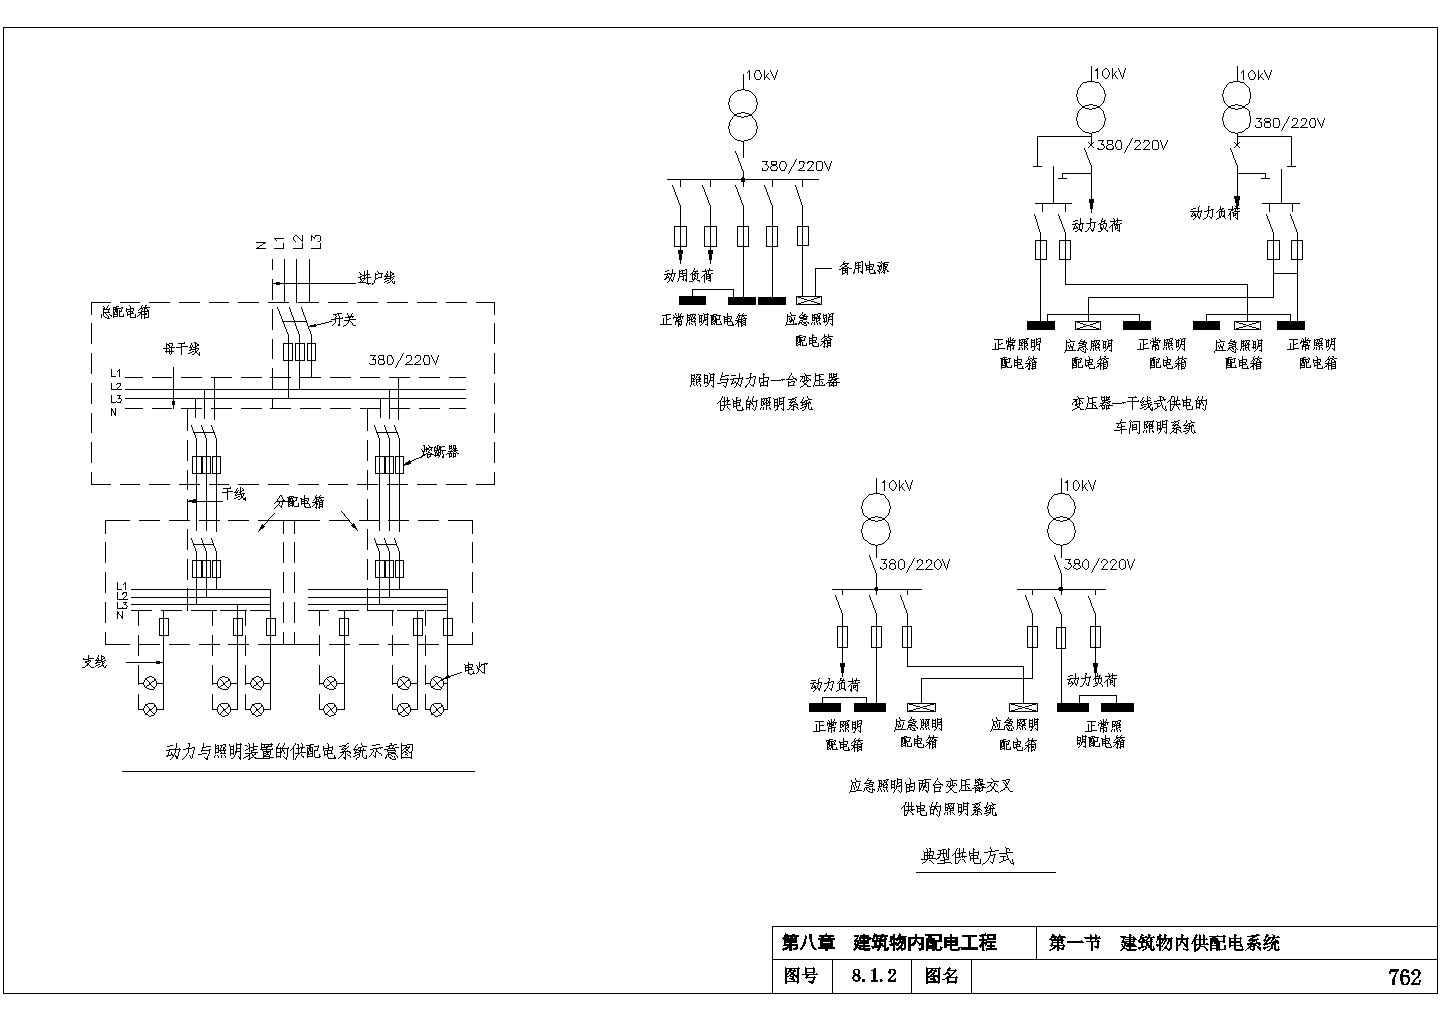 10KV变电所8-1建筑物内供配电系统设计图纸